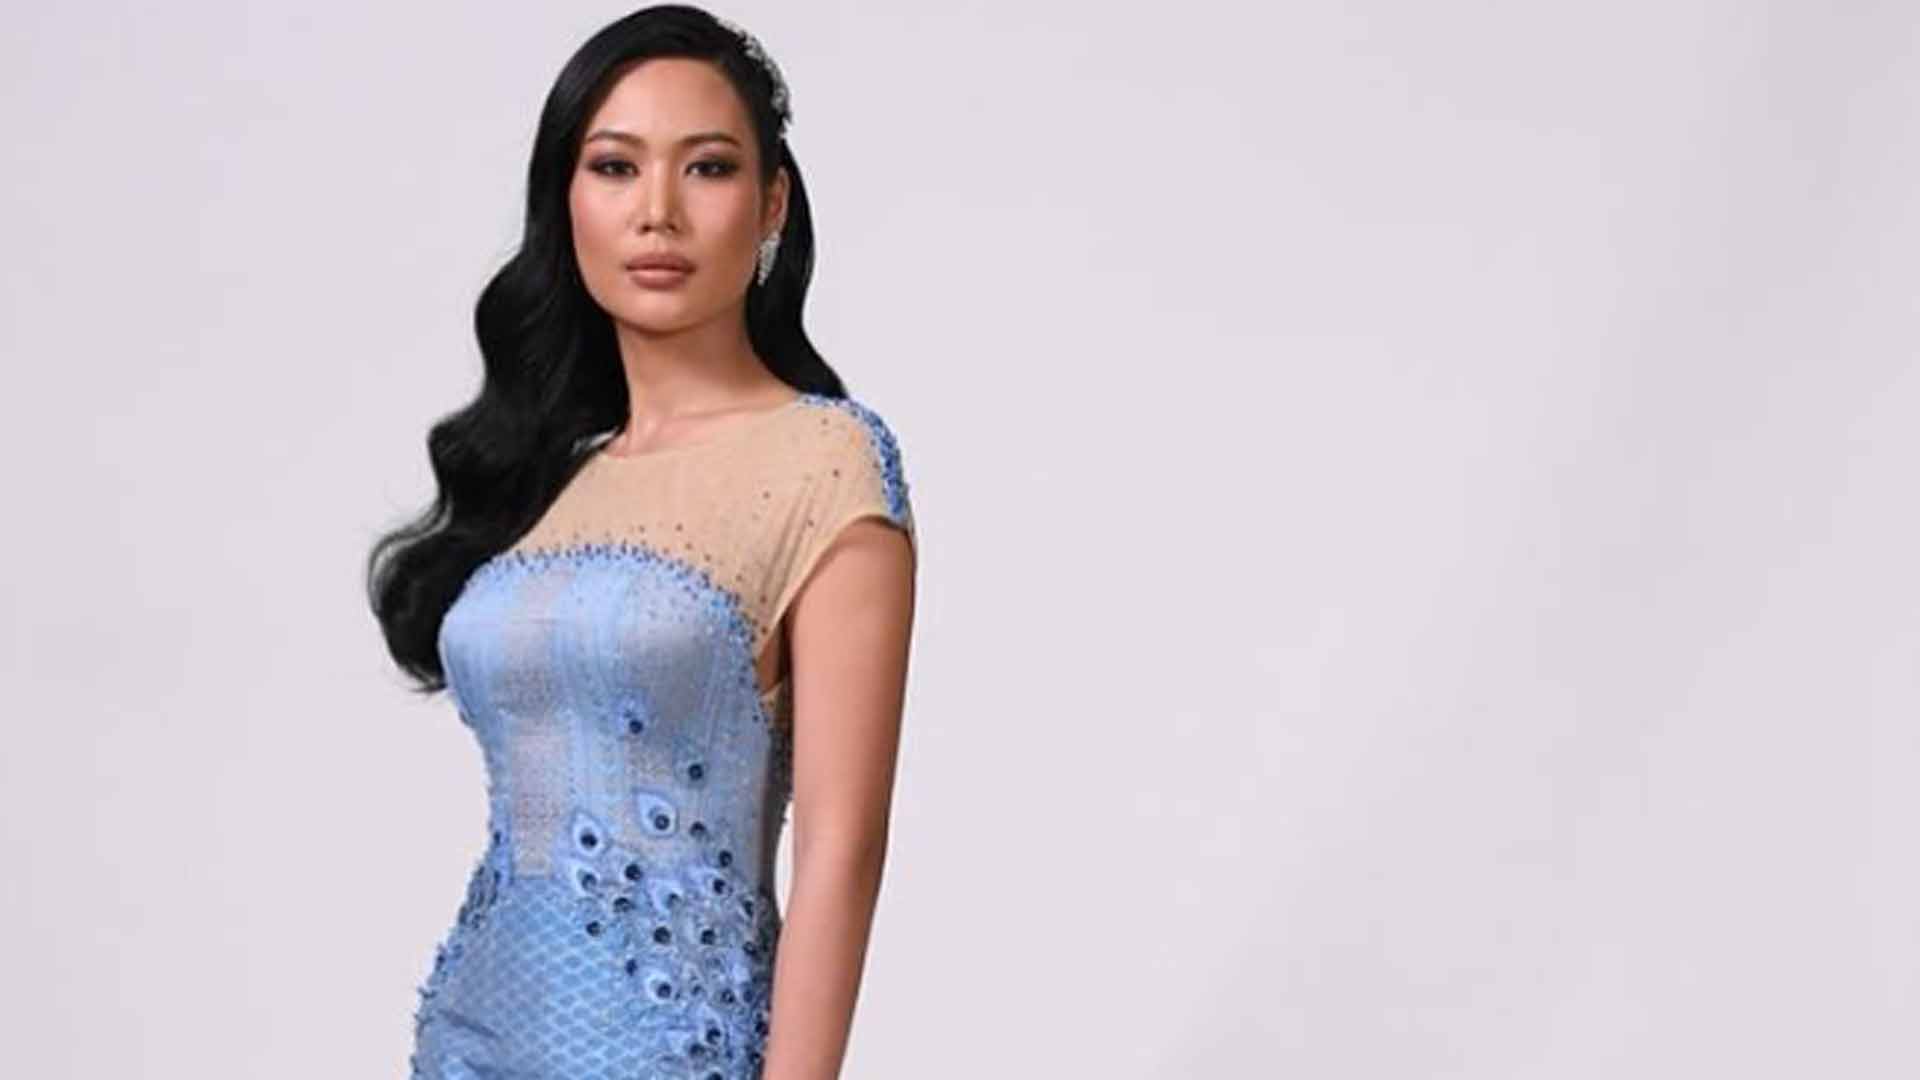 Una 'youtuber' se enfrenta a cargos por criticar el vestido de la candidata de Tailandia en el Miss Universo